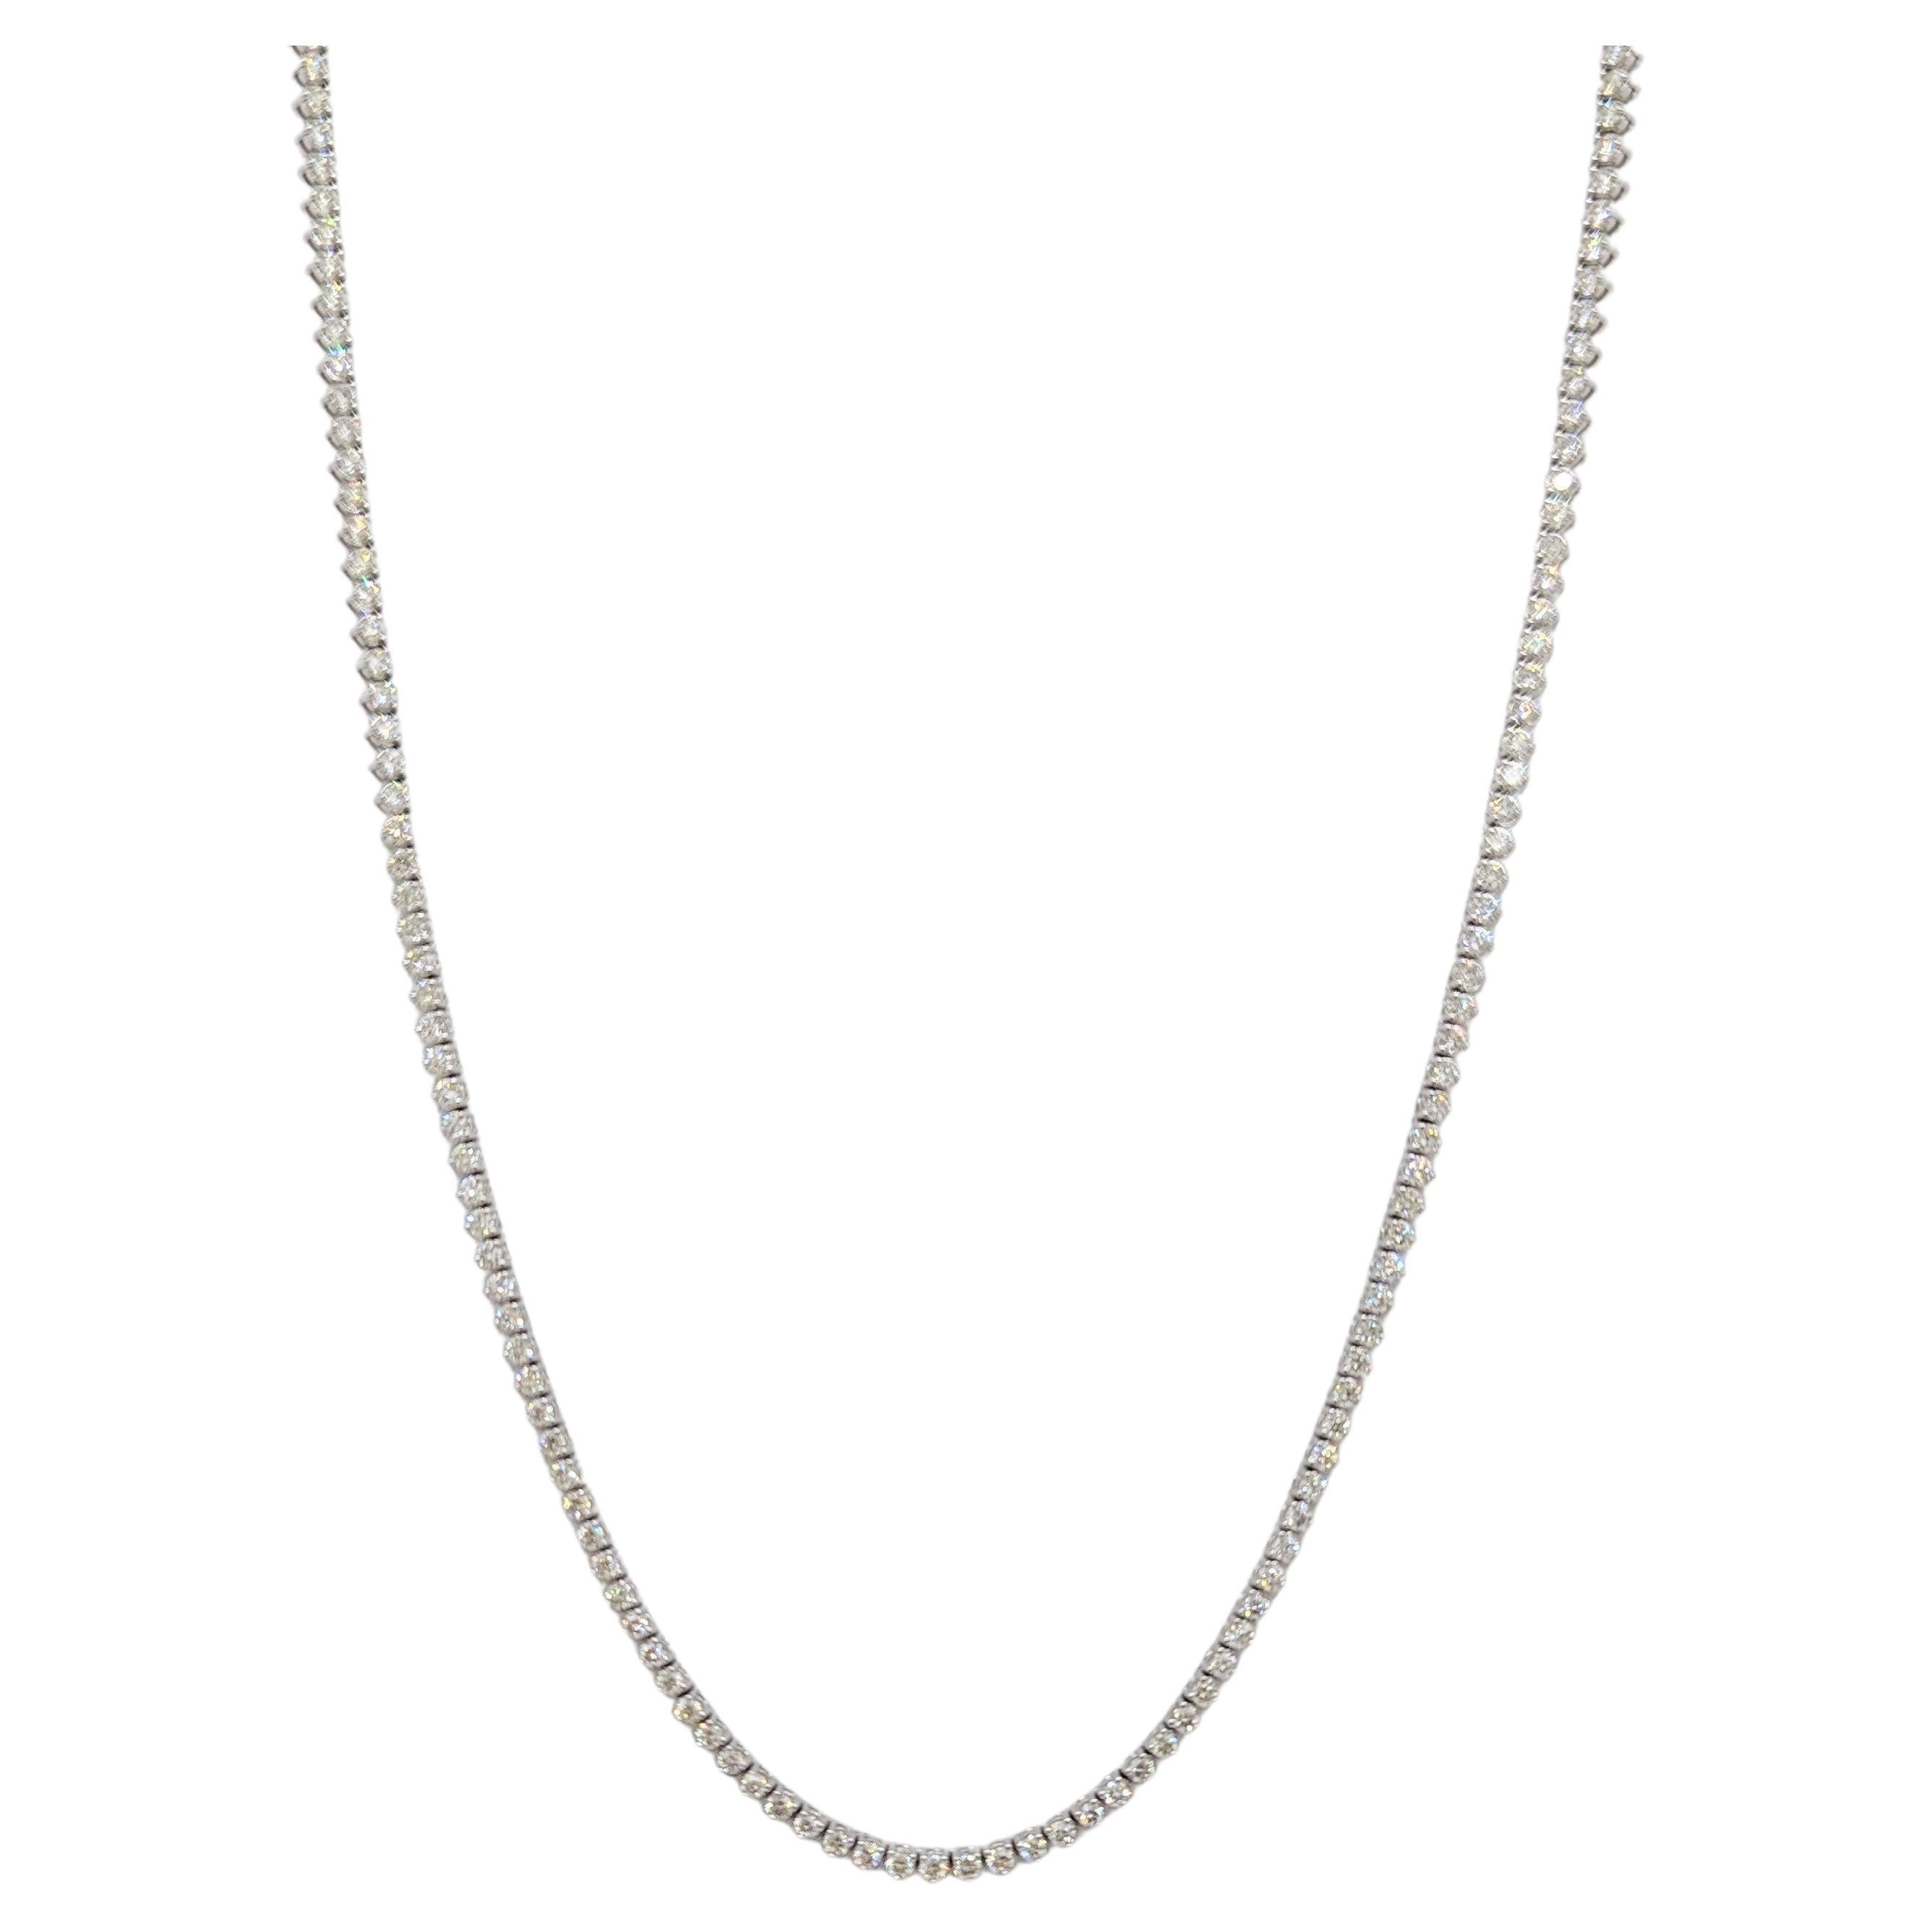 White Diamond Tennis Necklace in 14K White Gold